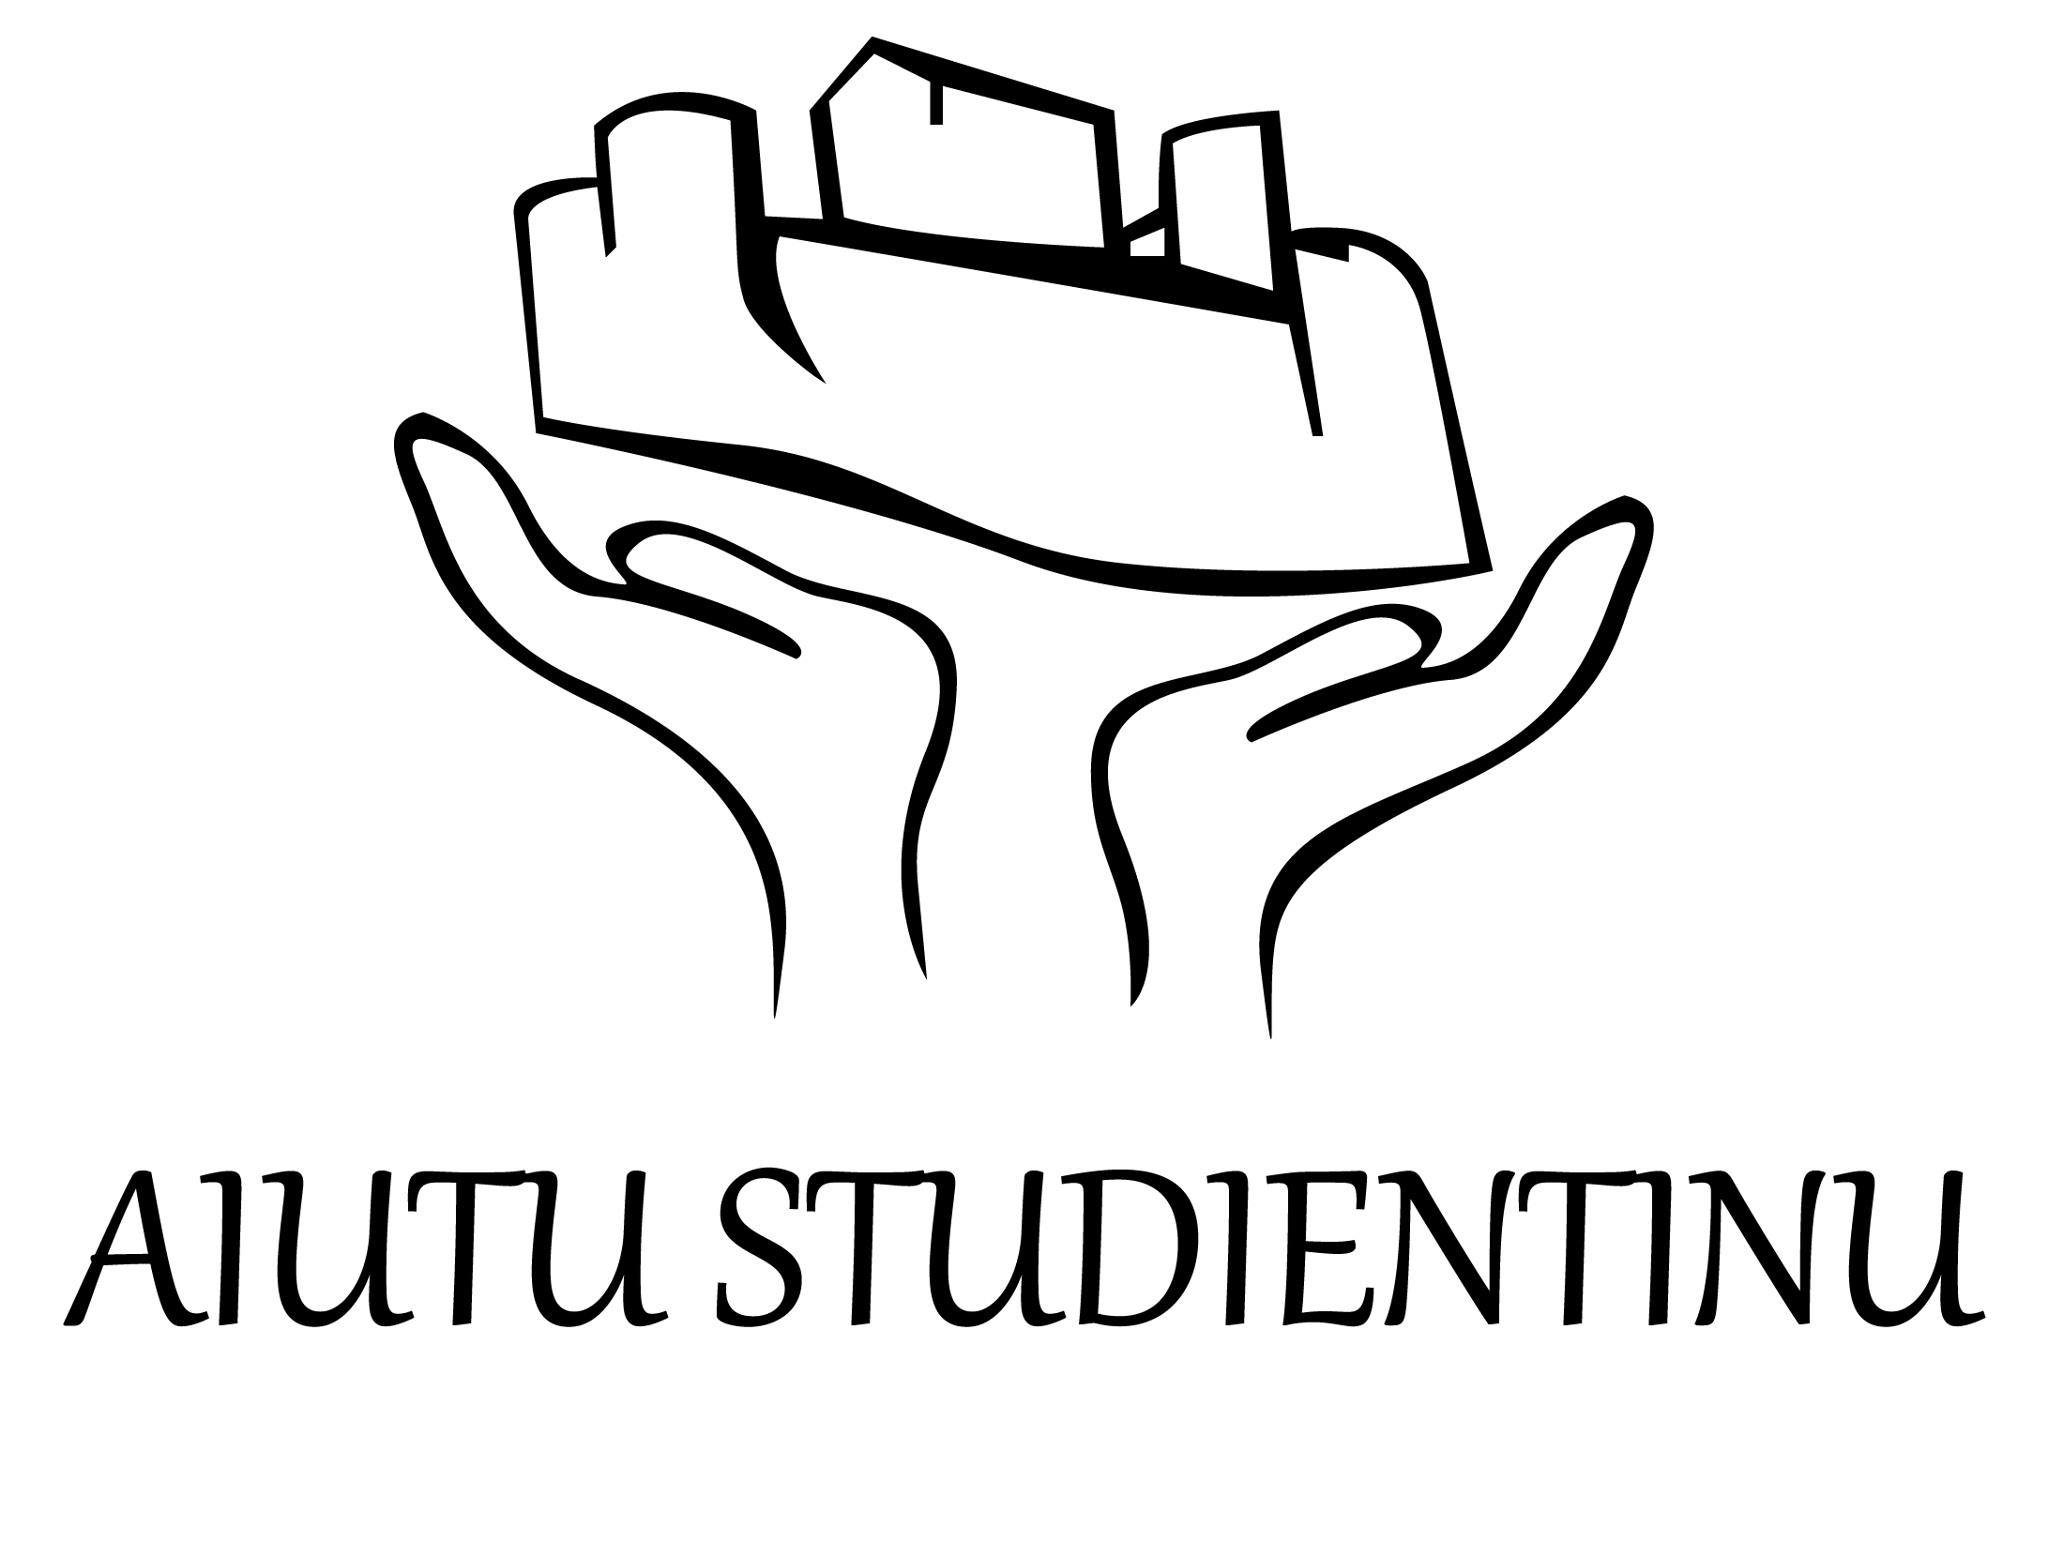 Logo Aiutu studientinu